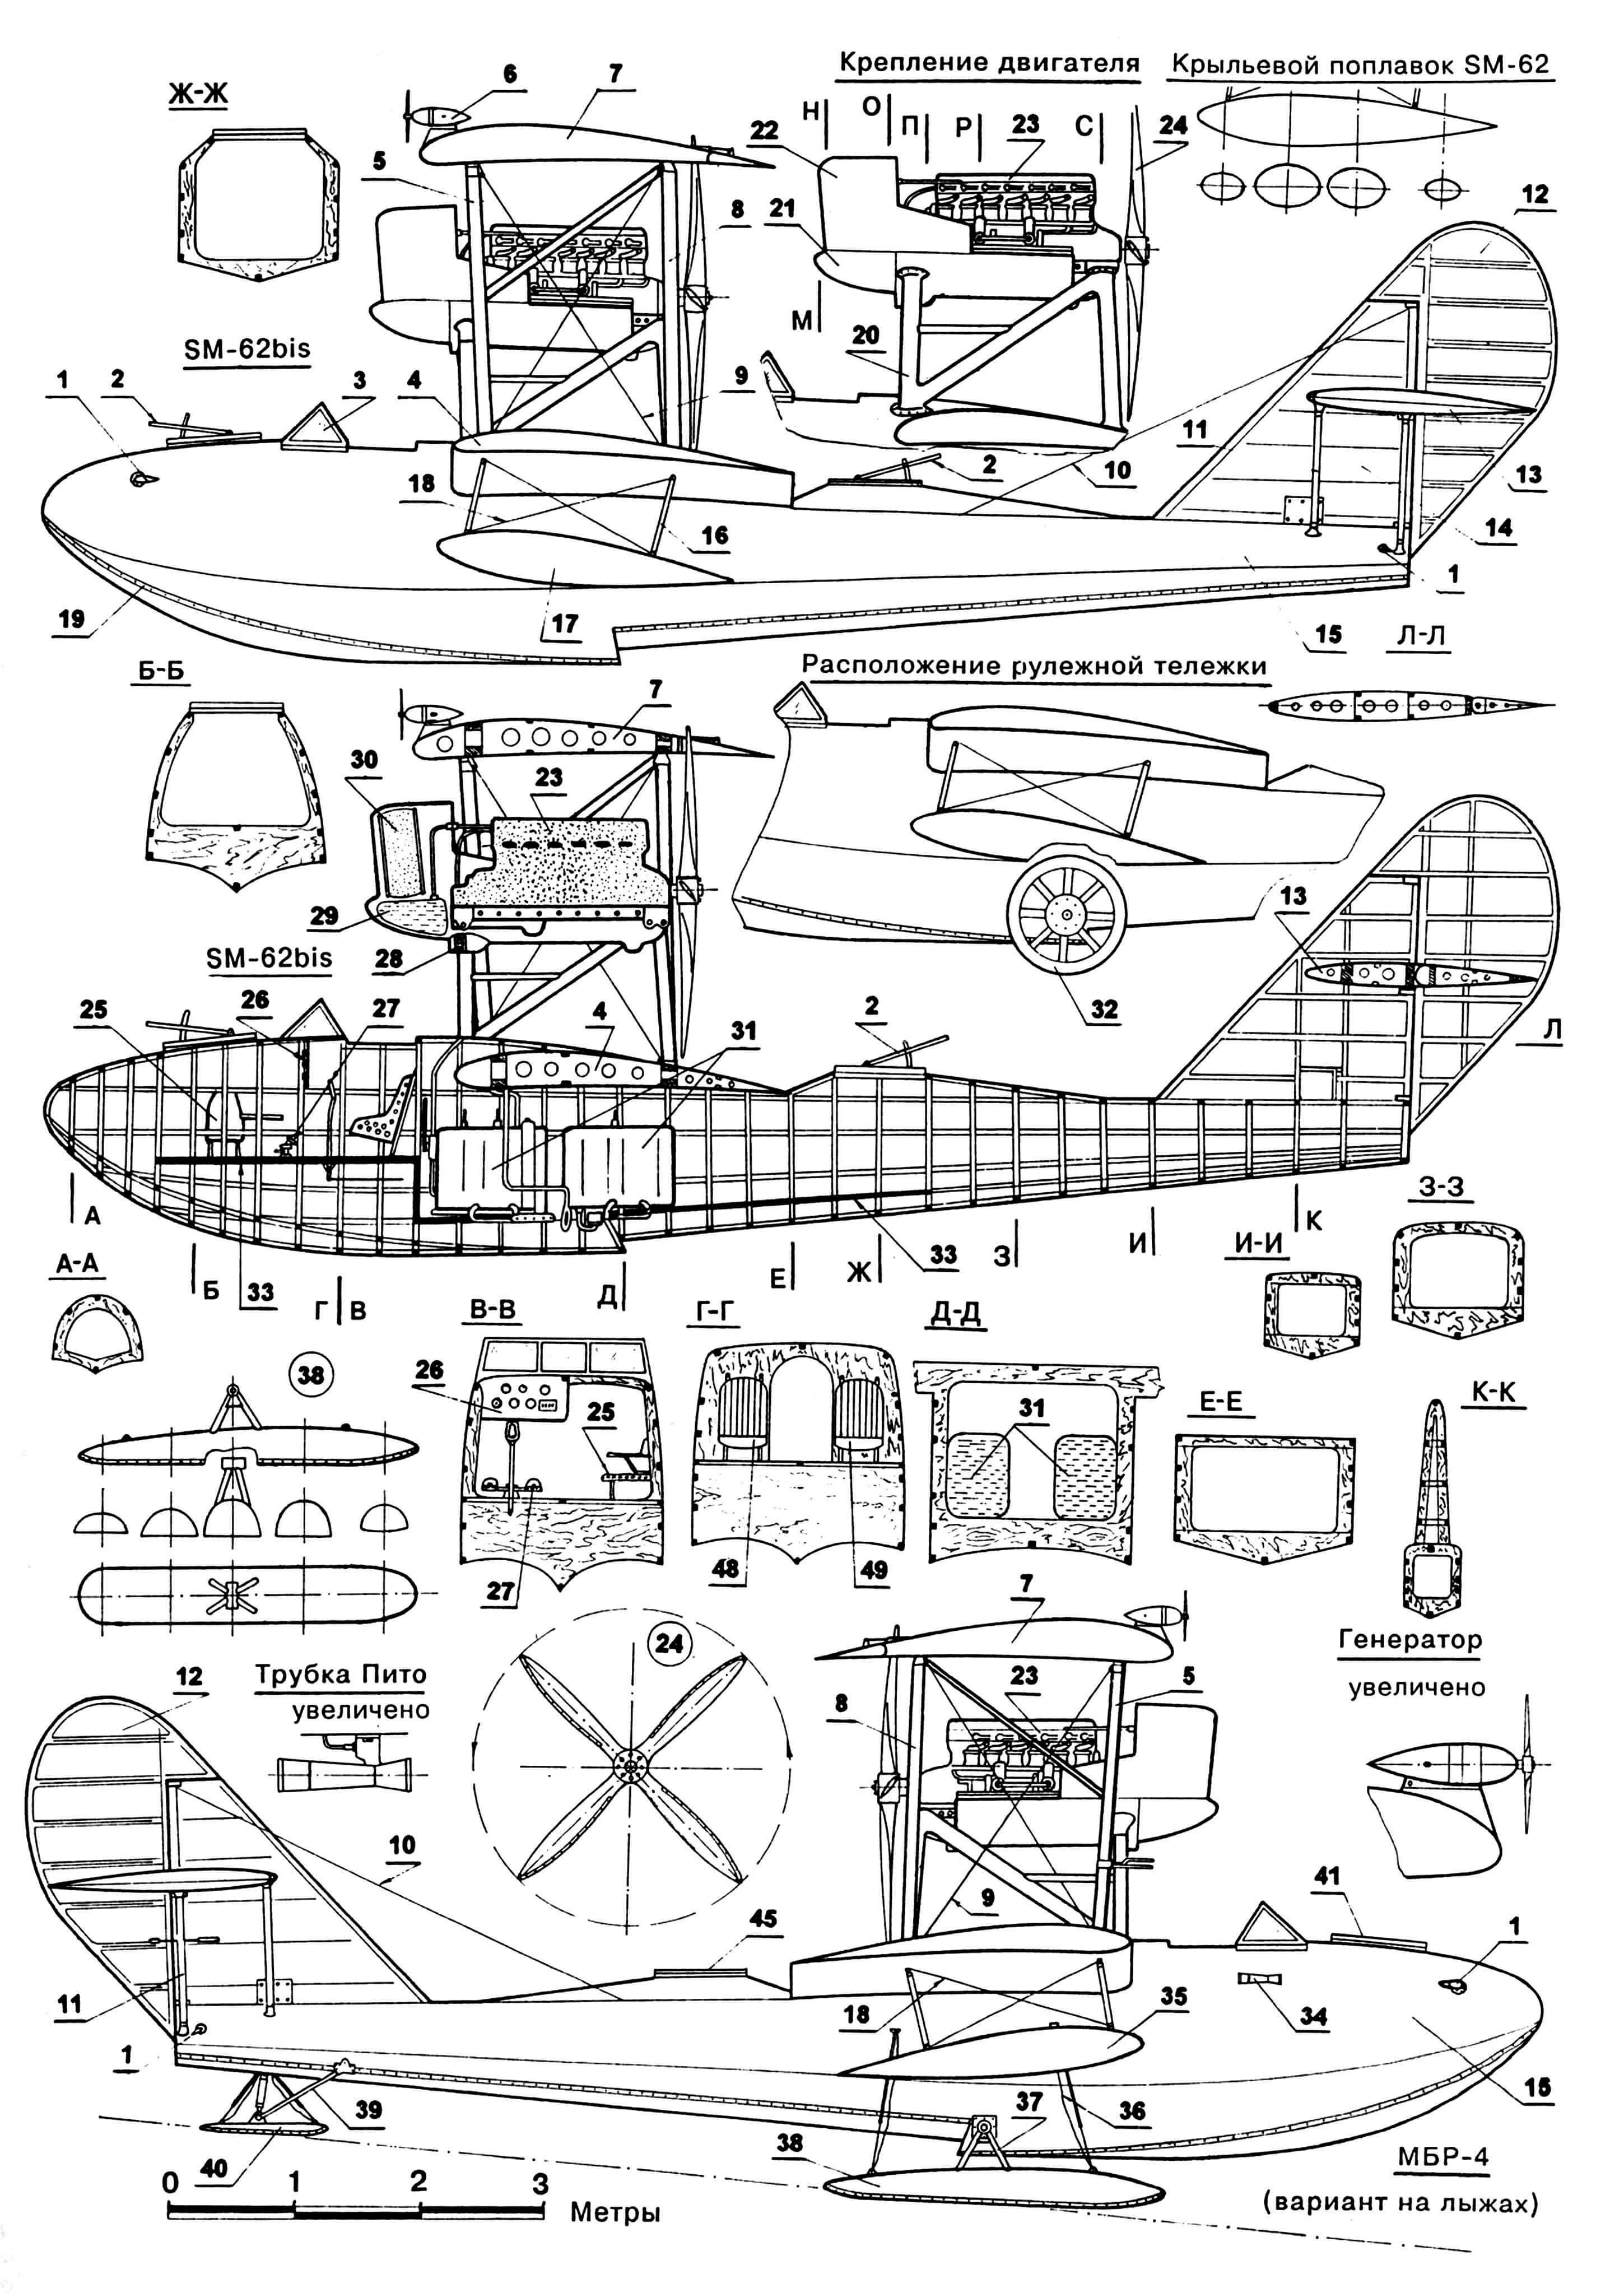 Savoia SM-62: 1 — узлы найтовочные, 2 — турели, 3 — стекло ветровое, 4 — крыло нижнее, 5 — подкосы крыла передние, 6 — генератор, 7 — крыло верхнее, 8 — подкосы крыла задние, 9 — расчалки крыла, 10 — расчалки киля, 11 — стойки стабилизатора, 12 — руль направления, 13 — стабилизатор, 14 — киль, 15 — корпус лодки, 16 — стойки поплавков, 17 — поплавок крыльевой, 18 — расчалки поплавков, 19 — окантовка корпуса медная, 20 — стойки двигателя, 21 — поддон двигателя, 22 — обтекатель двигателя, 23 — двигатель, 24 — винт воздушный, 25 — место штурмана, 26 — доска приборная, 27 — органы управления, 28 — маслорадиатор, 29 — бак расходный, 30 — радиатор водяной, 31 — баки топливные, 32 — колесо рулежной тележки, 33 — пол, 34 — трубка Пито, 35 — поплавок квадратного сечения, 36 — амортизаторы лыж резиновые, 37 — кронштейны основного шасси, 38 — лыжи основного шасси, 39 — крепление хвостовой опоры, 40 — лыжа хвостовая, 41 — точка стрелковая передняя, 42 — центроплан, 43 — консоль крыла, 44 — элерон, 45 — точка стрелковая задняя, 46 — руль высоты, 47 — пулемет ДА-2 спаренный, 48 — кресло бортмеханика, 49 — кресло пилота, 50 — бомба ФАБ-50.